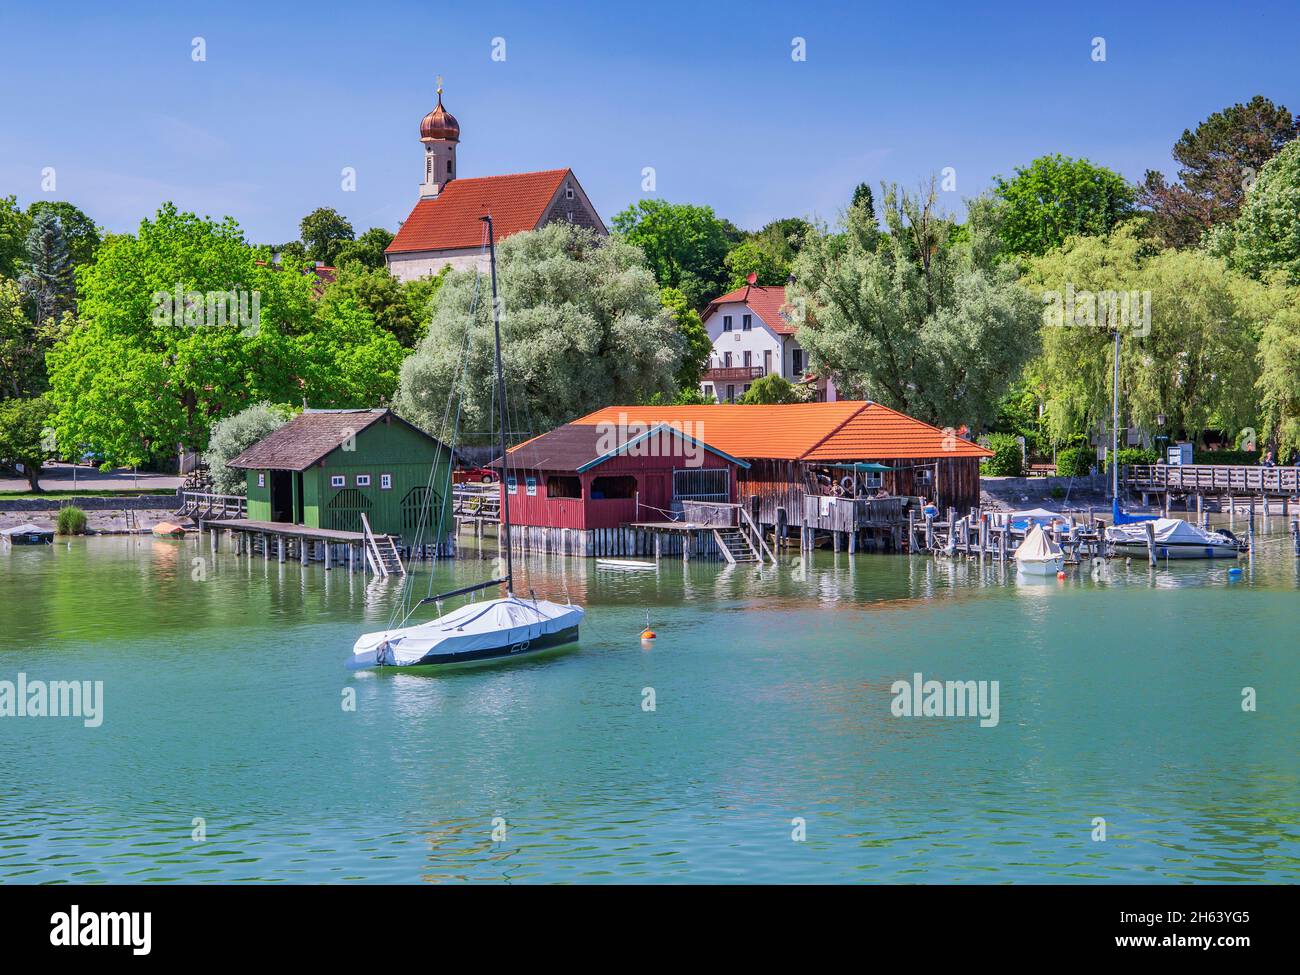 Bootshäuser am Seeufer mit St. jakob Kirche,schondorf,ammersee,Voralpensee,Alpenvorland,oberbayern,bayern,deutschland Stockfoto